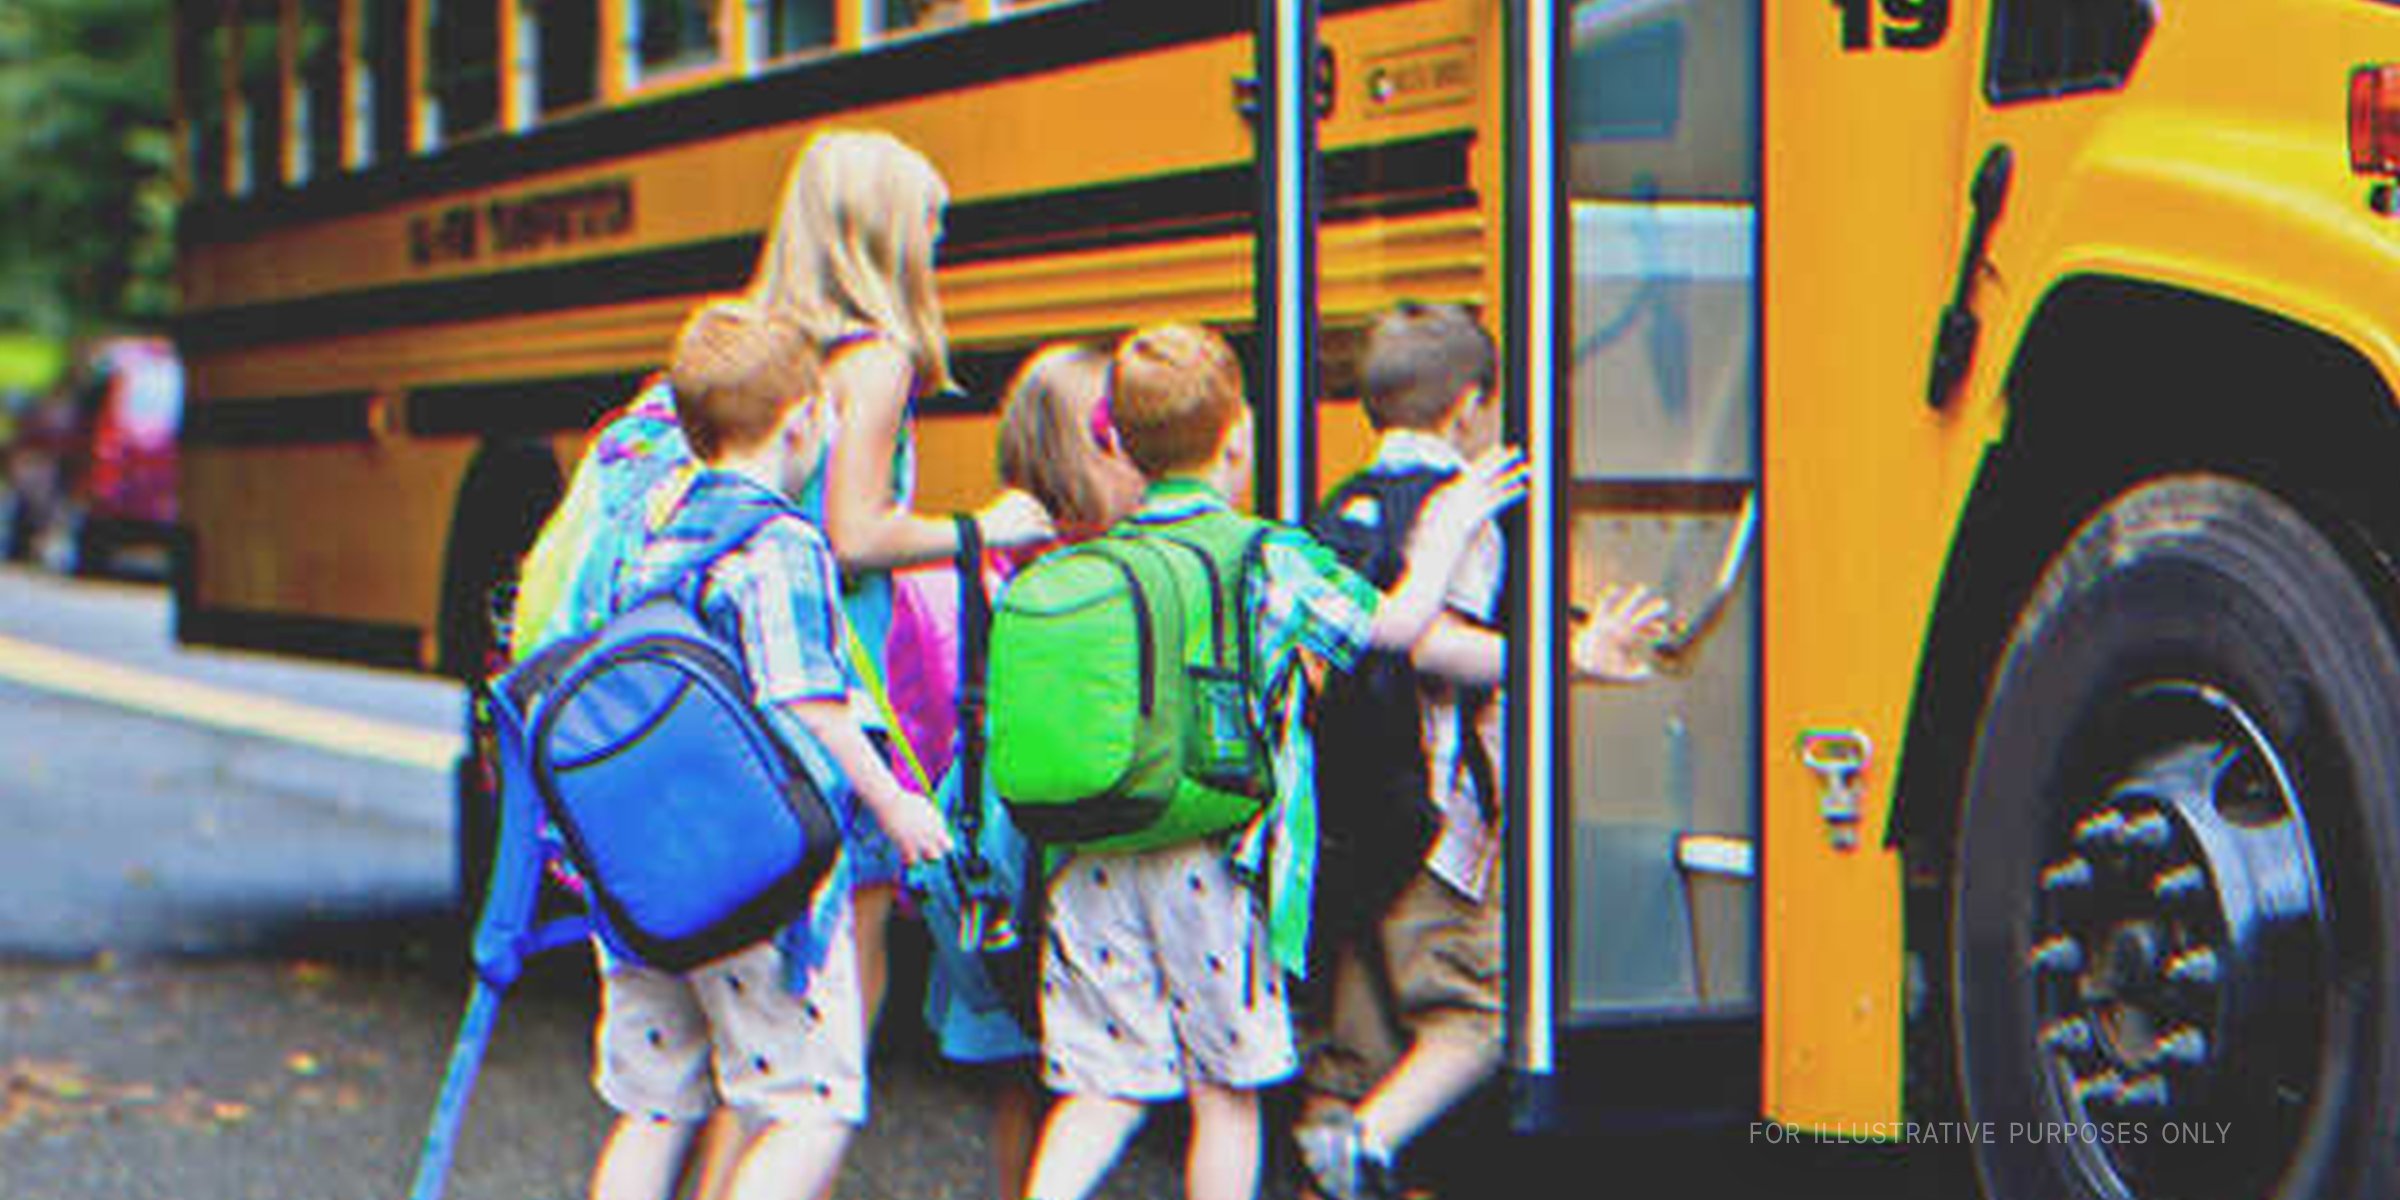 Kinder steigen in ein Bus ein | Quelle: Shutterstock